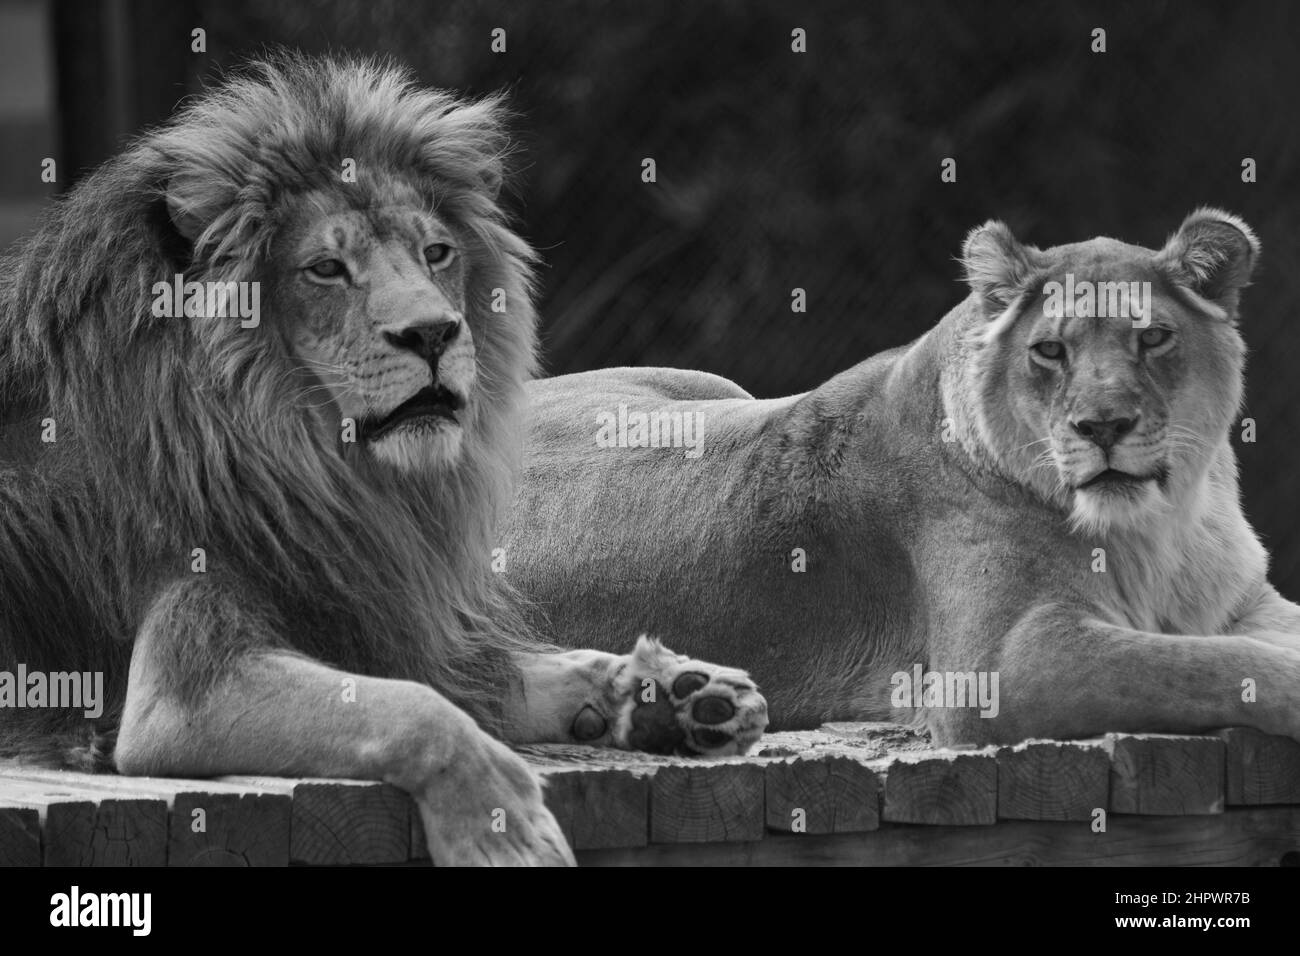 Les lions magnifiques se détendent dans un parc animalier dédié à leur soin et à leur bien-être Banque D'Images